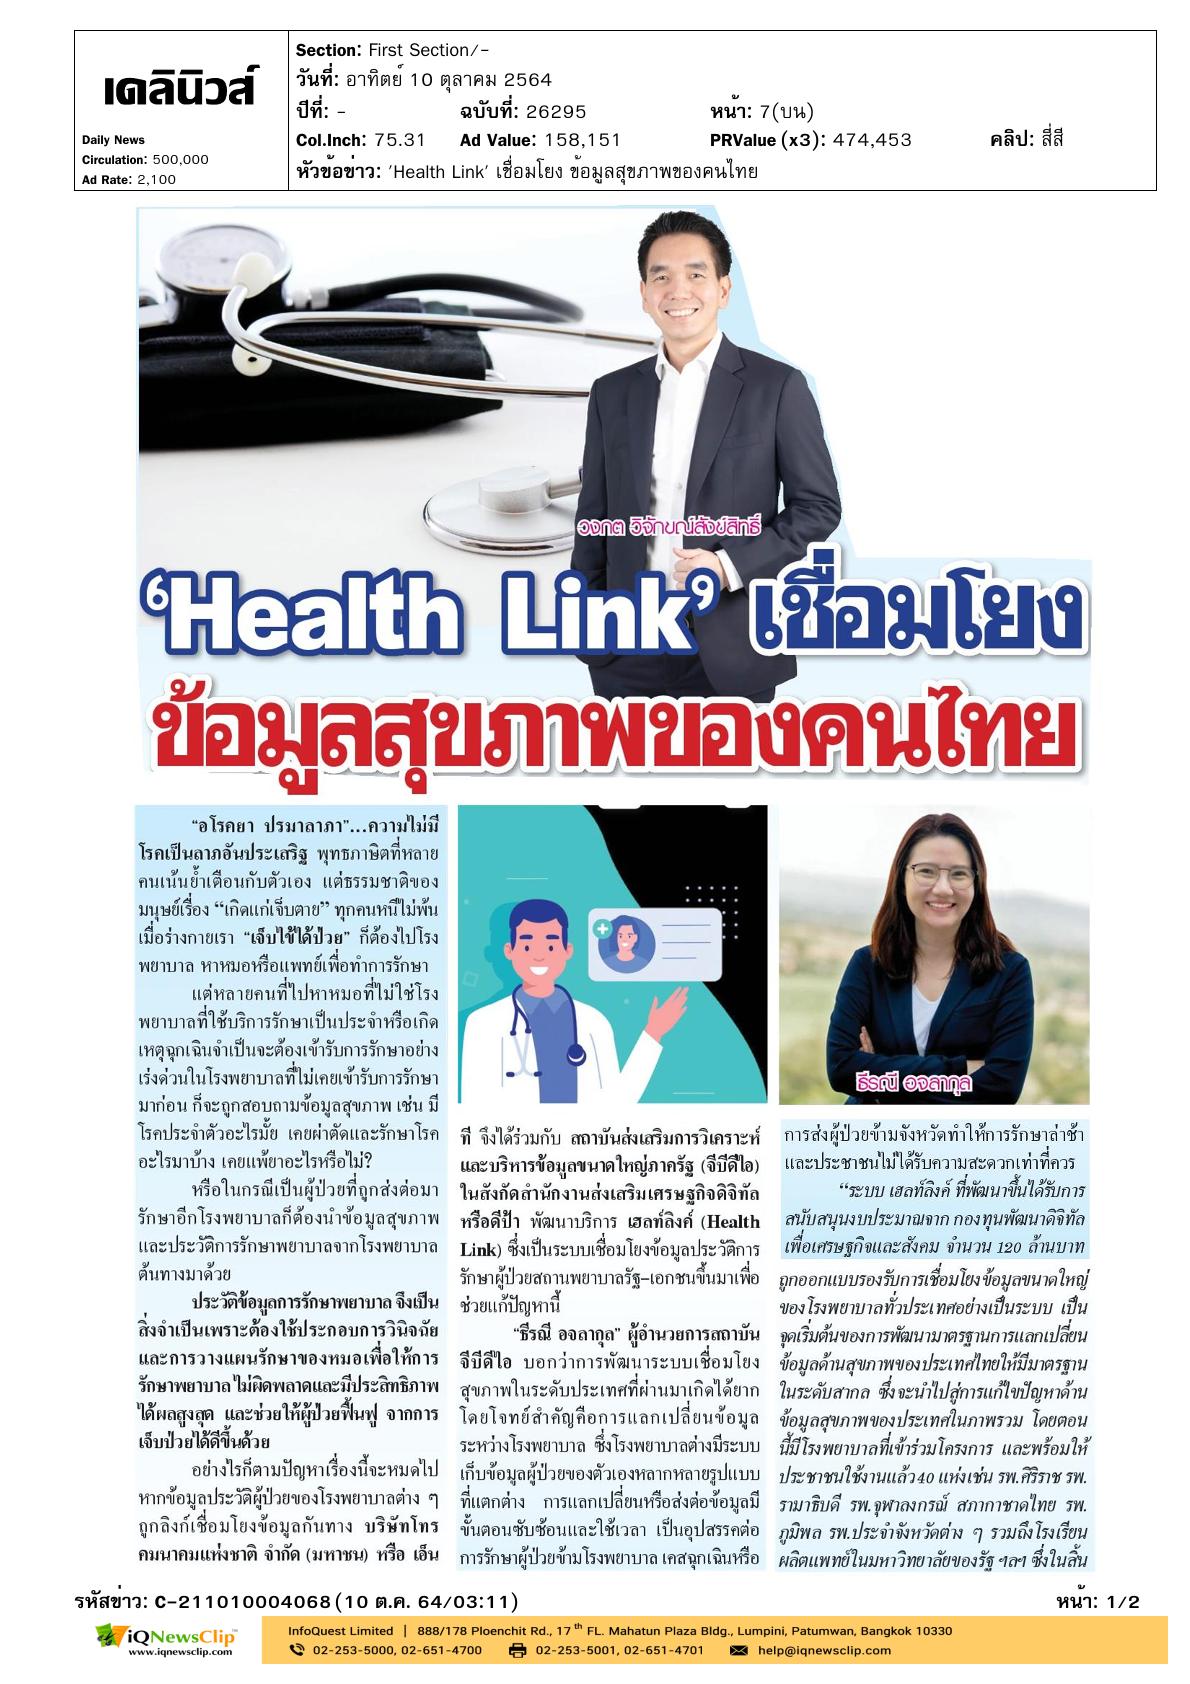 บทความเรื่อง “Health Link เชื่อมโยงข้อมูลสุขภาพของคนไทย”